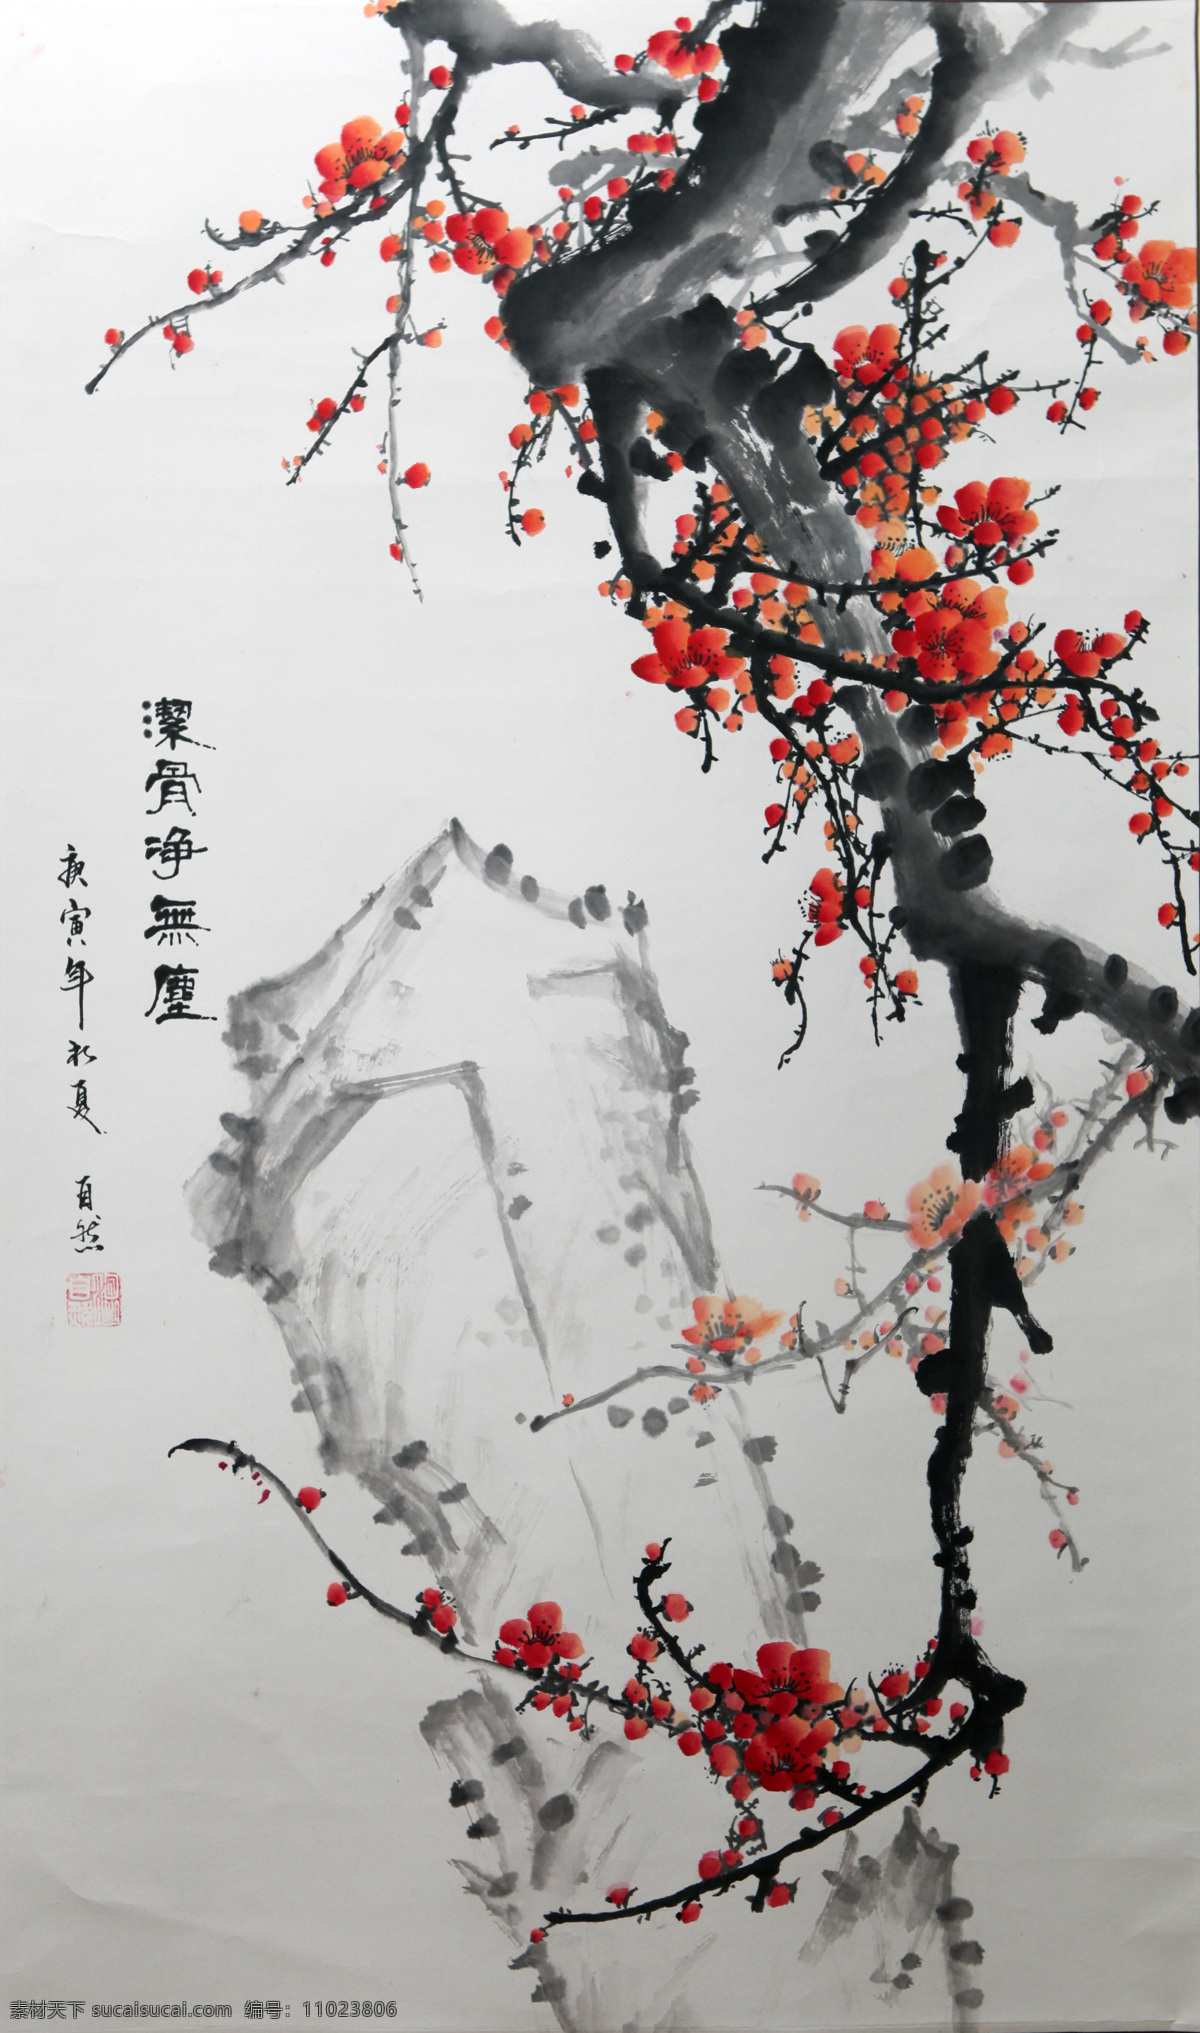 寒梅 梅花 国画 红梅 一支梅 绘画艺术 中国风 国画梅花 绘画书法 文化艺术